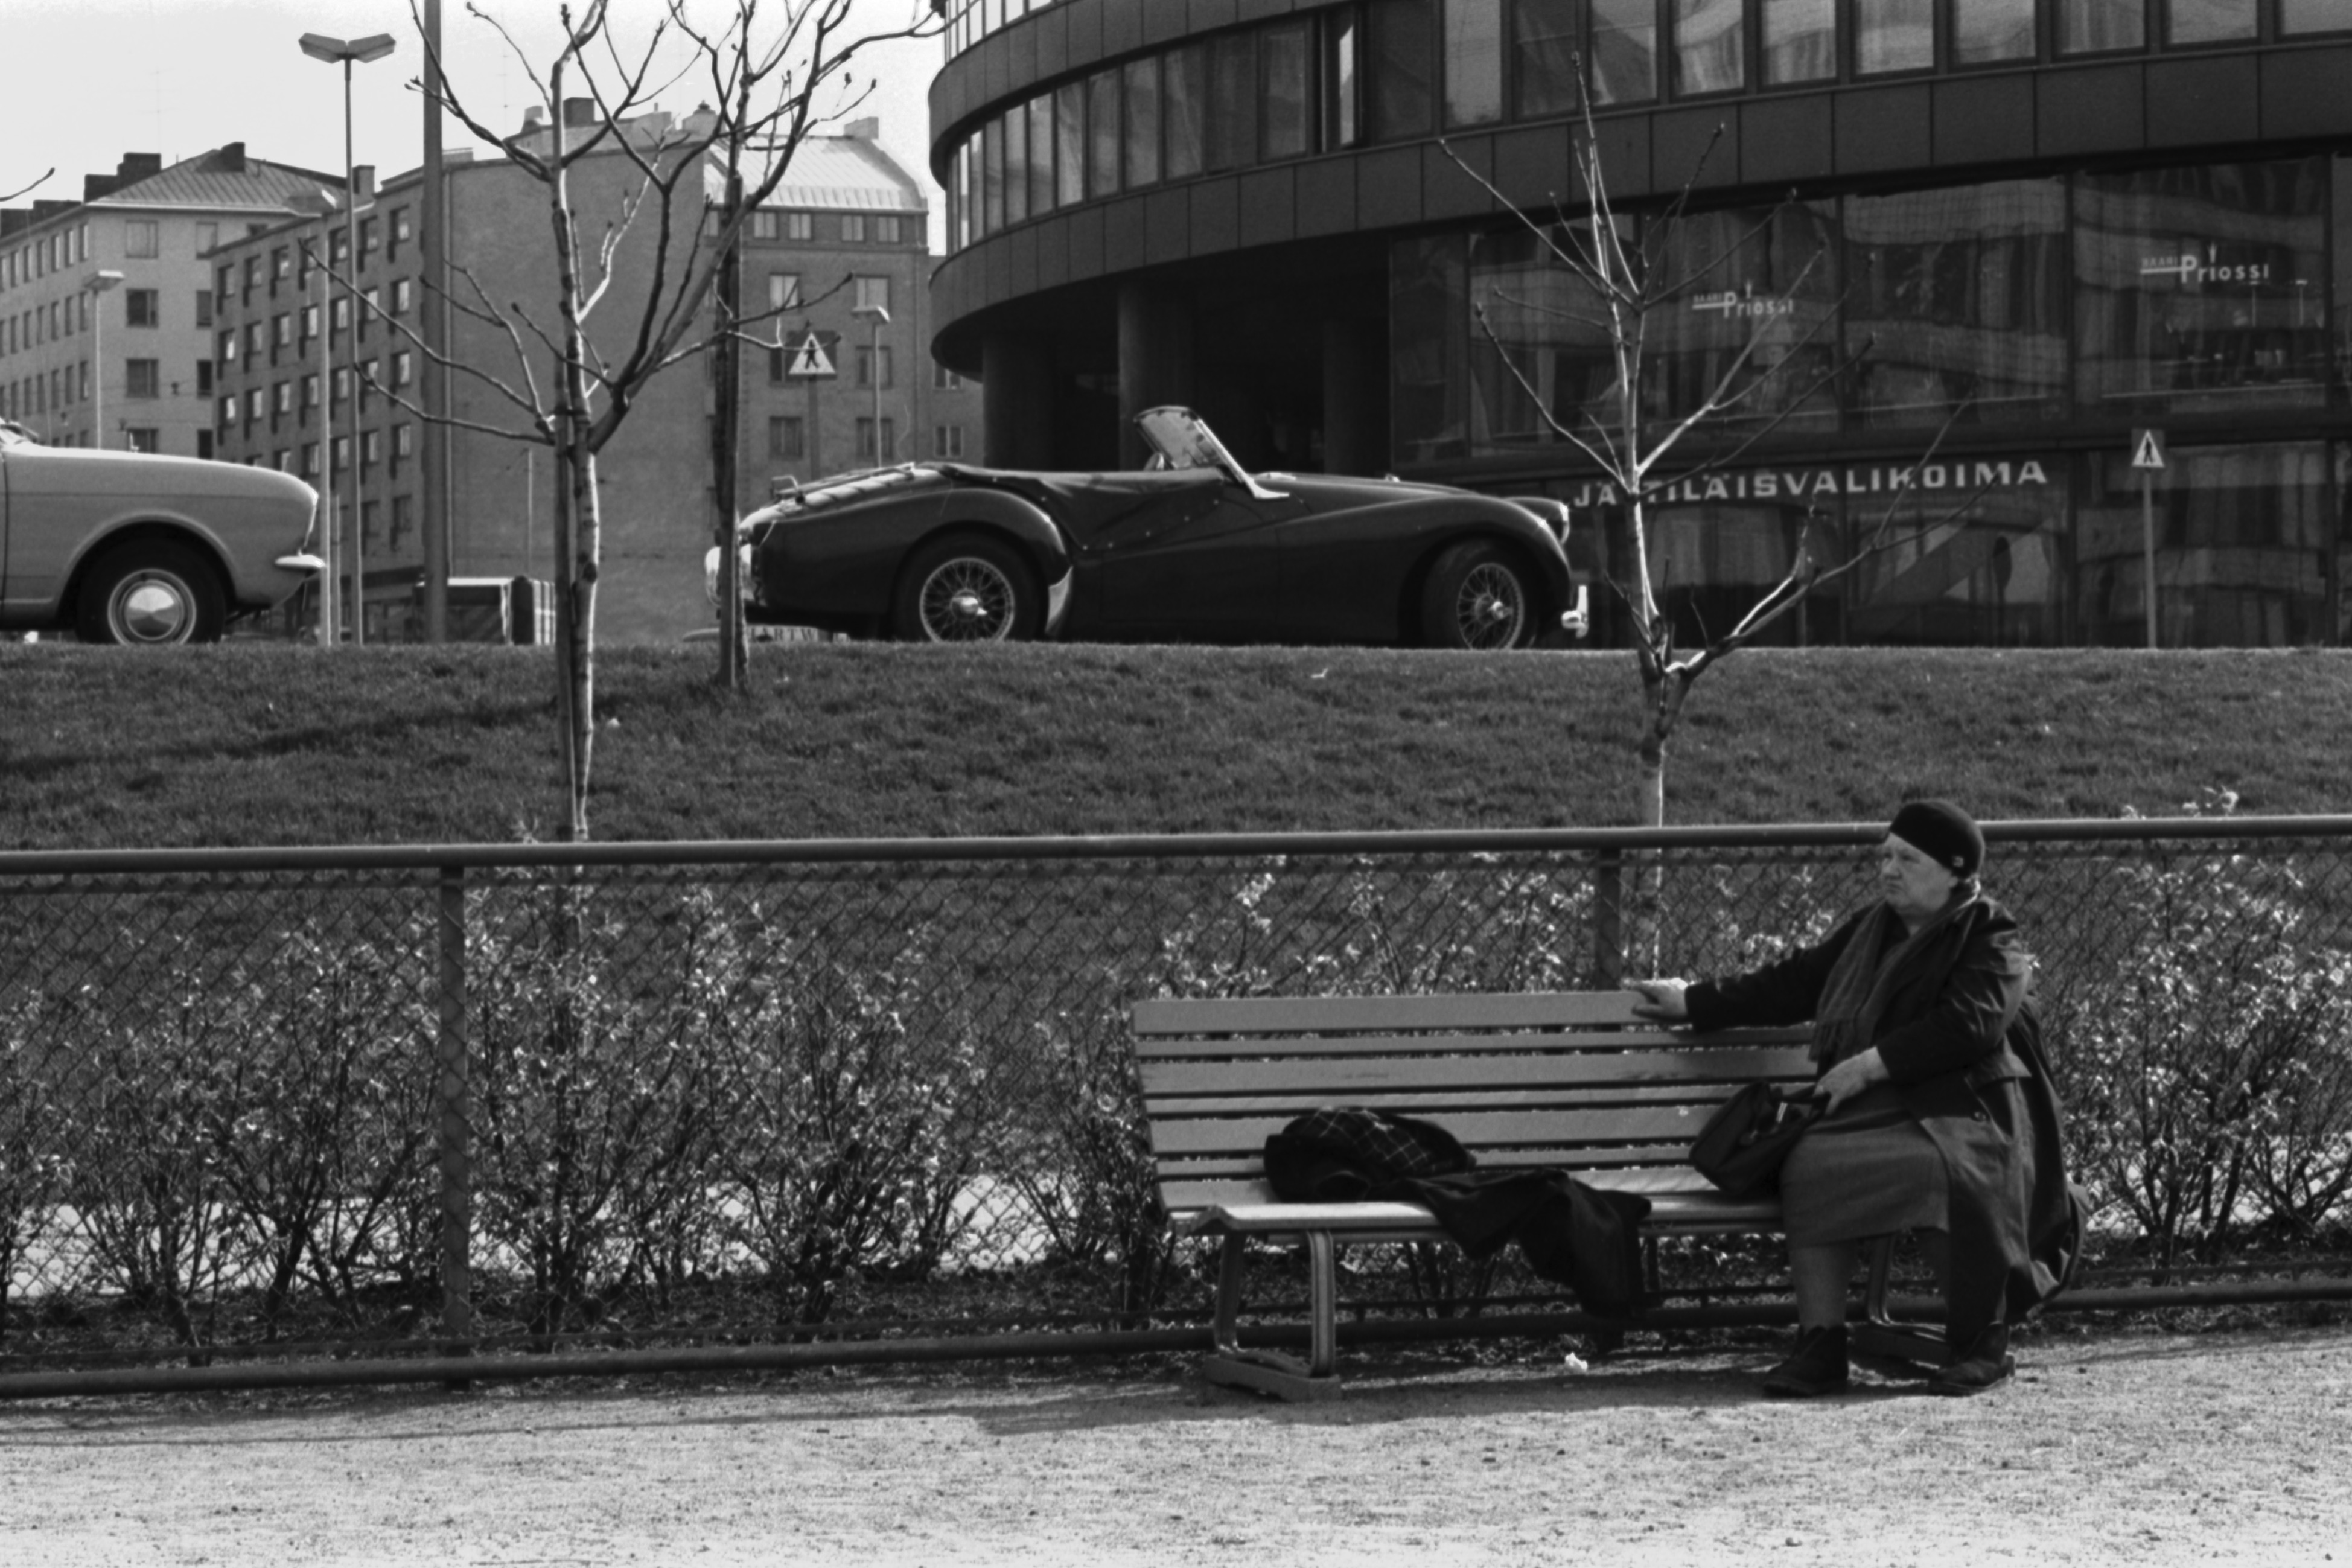 Tokoinranta. Eläintarhantie. Vanhahko nainen istumassa penkillä Tokoinrannan puistossa. Taustalla pysäköity urheiluauto (Triumph TR3) Eläintarhantiellä Ympyrätalon edessä. Vasemmassa reunassa näkyy Ford Cortina.